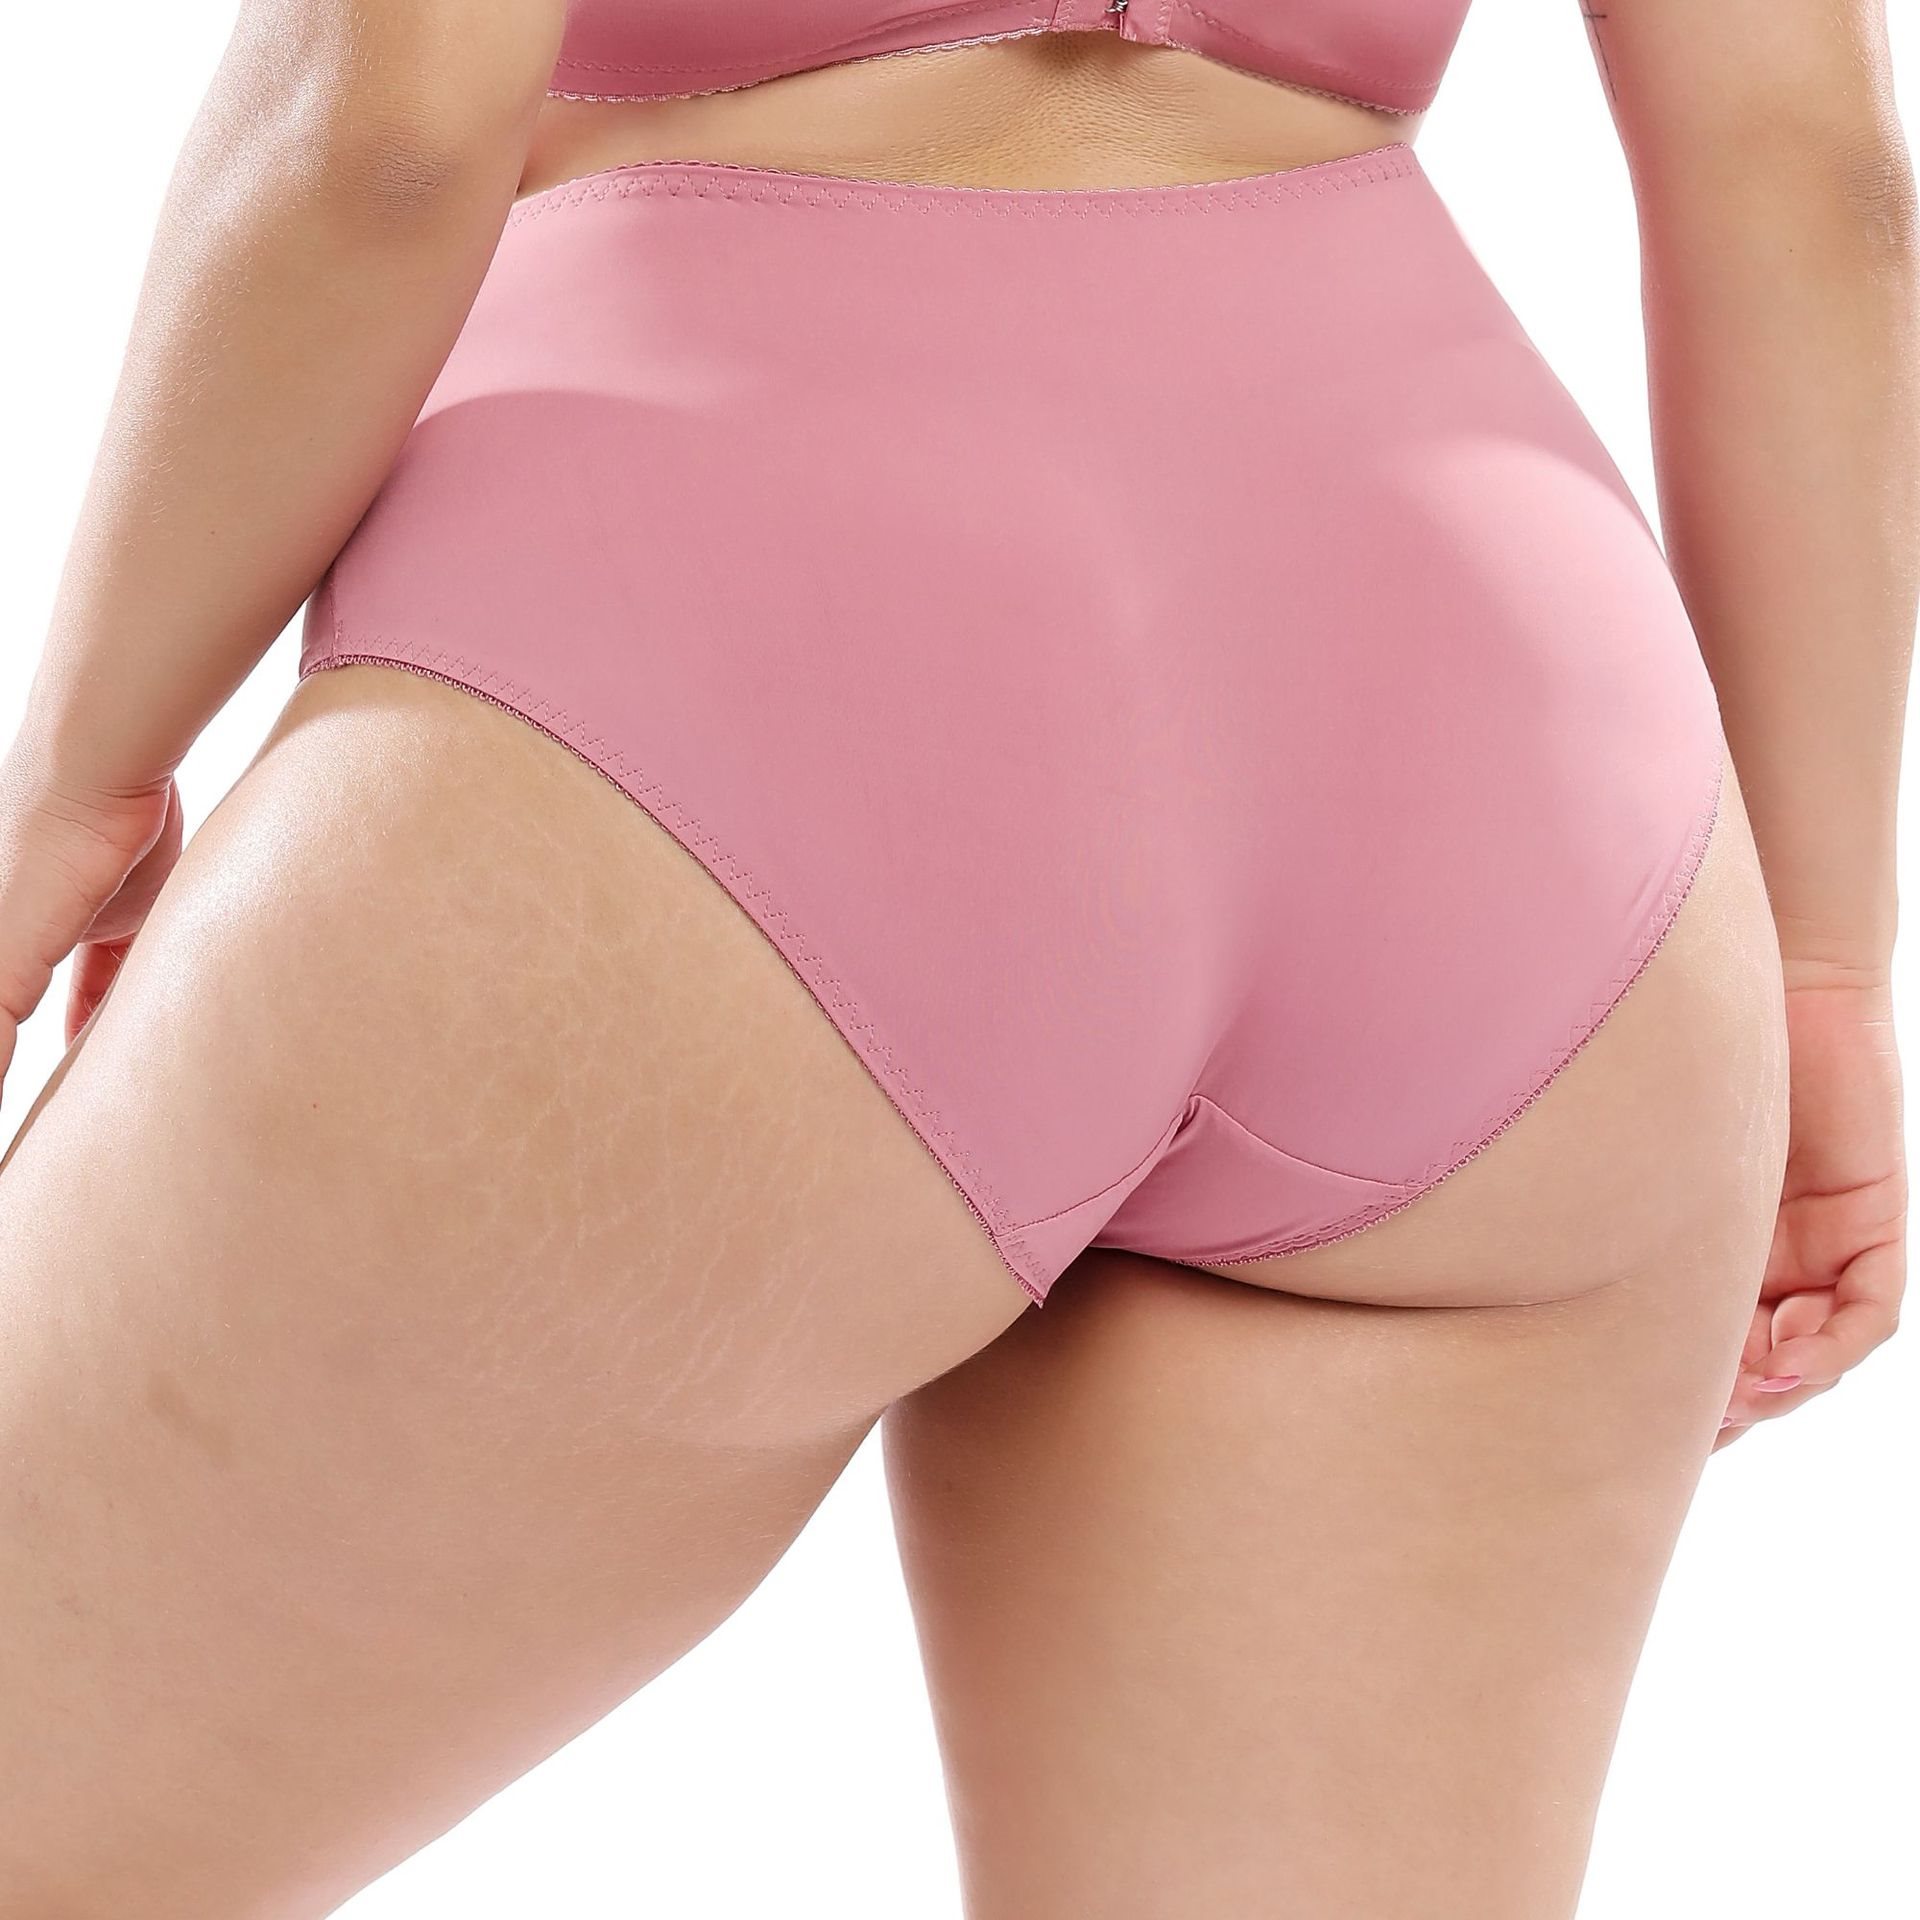 Plus-size women's underwear cute lace high waist briefs